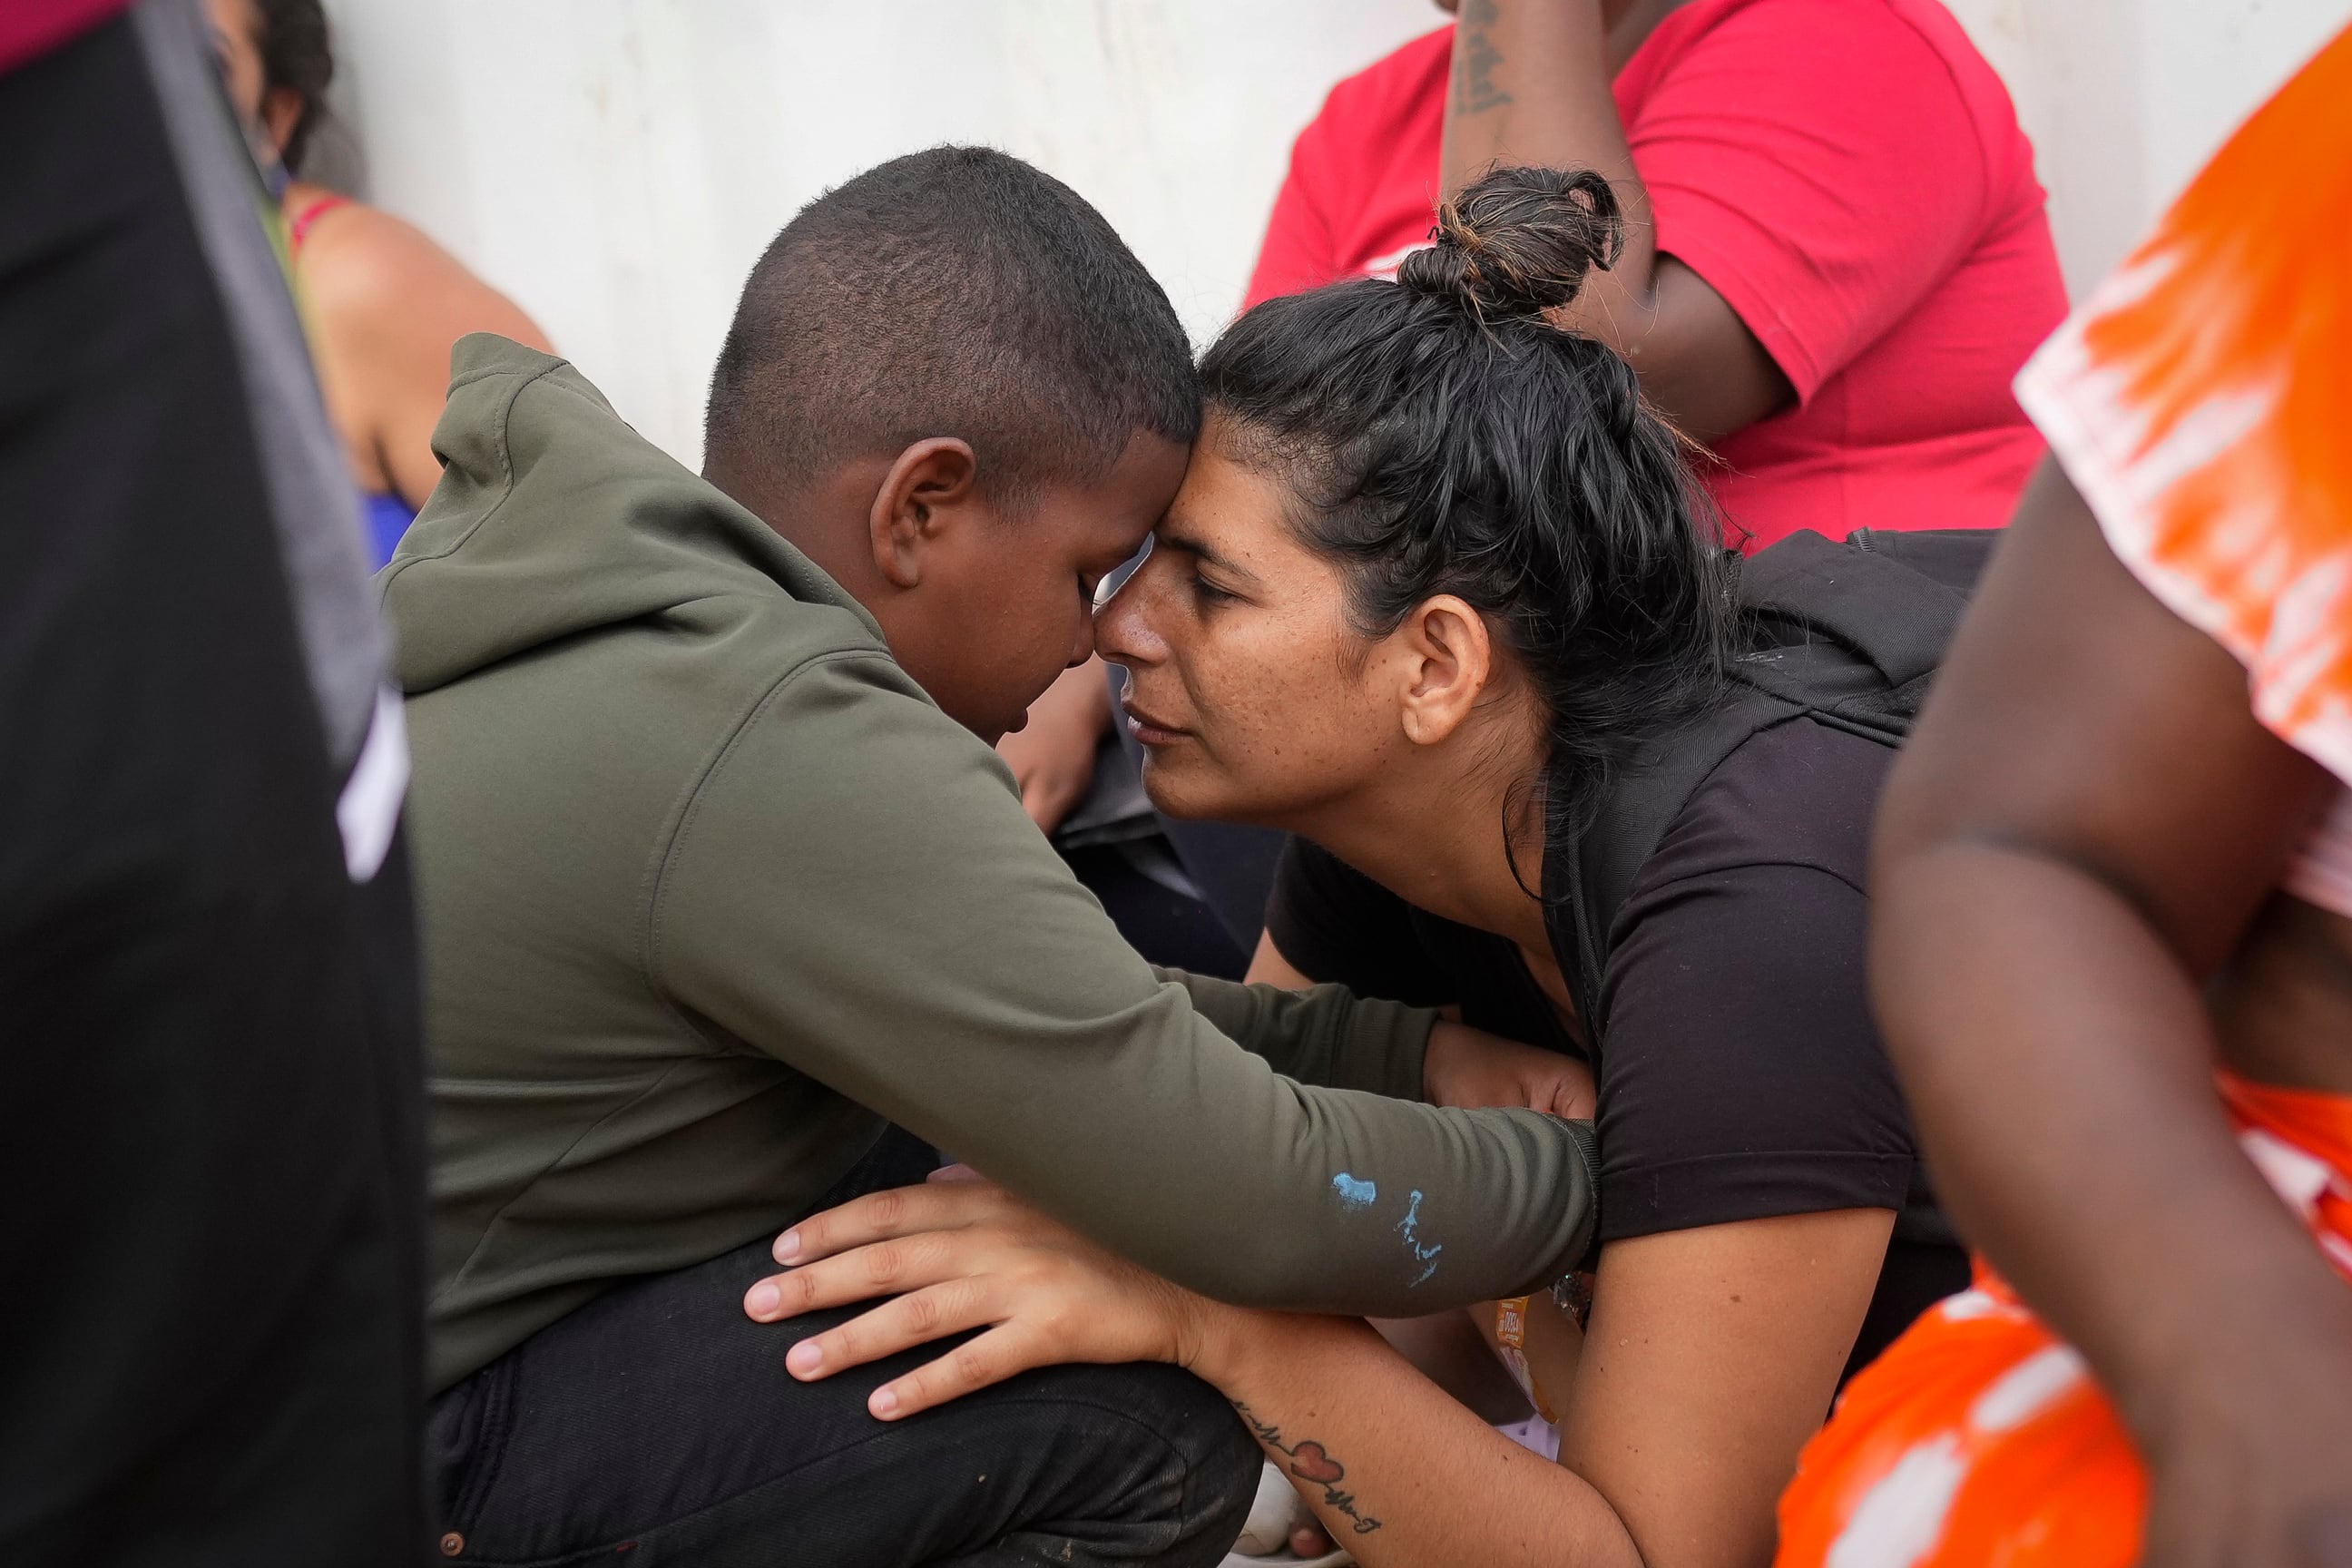 La migrante venezolana Nelsy Zavala, a la derecha, abraza a un chico migrante venezolano Yeikel Mojica, a quien conoció mientras cruzaba el Tapón del Darién